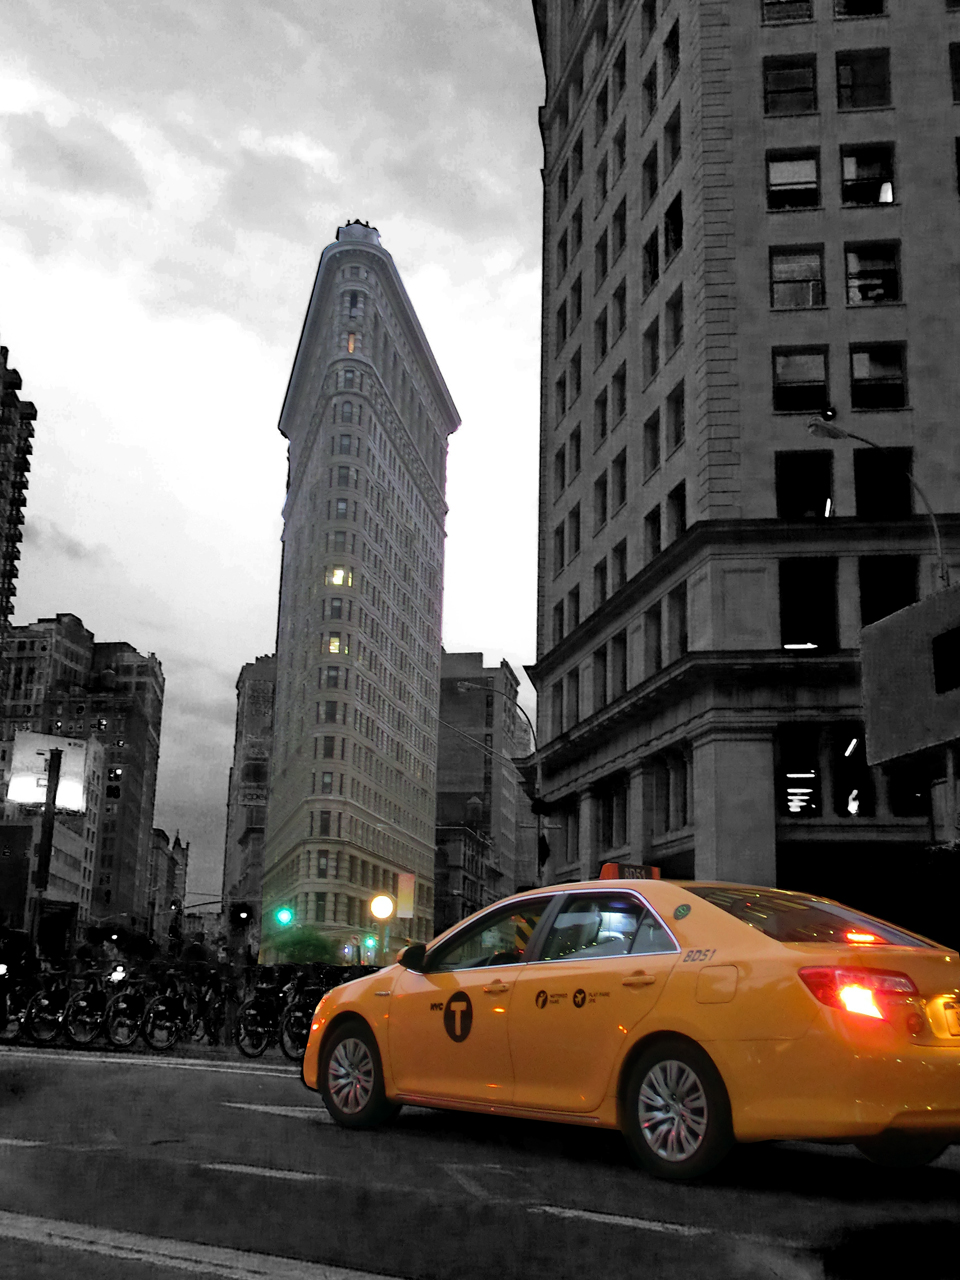 Flatiron Building mit gelbem NYC Taxi - in schwarz-weißer Umgebung